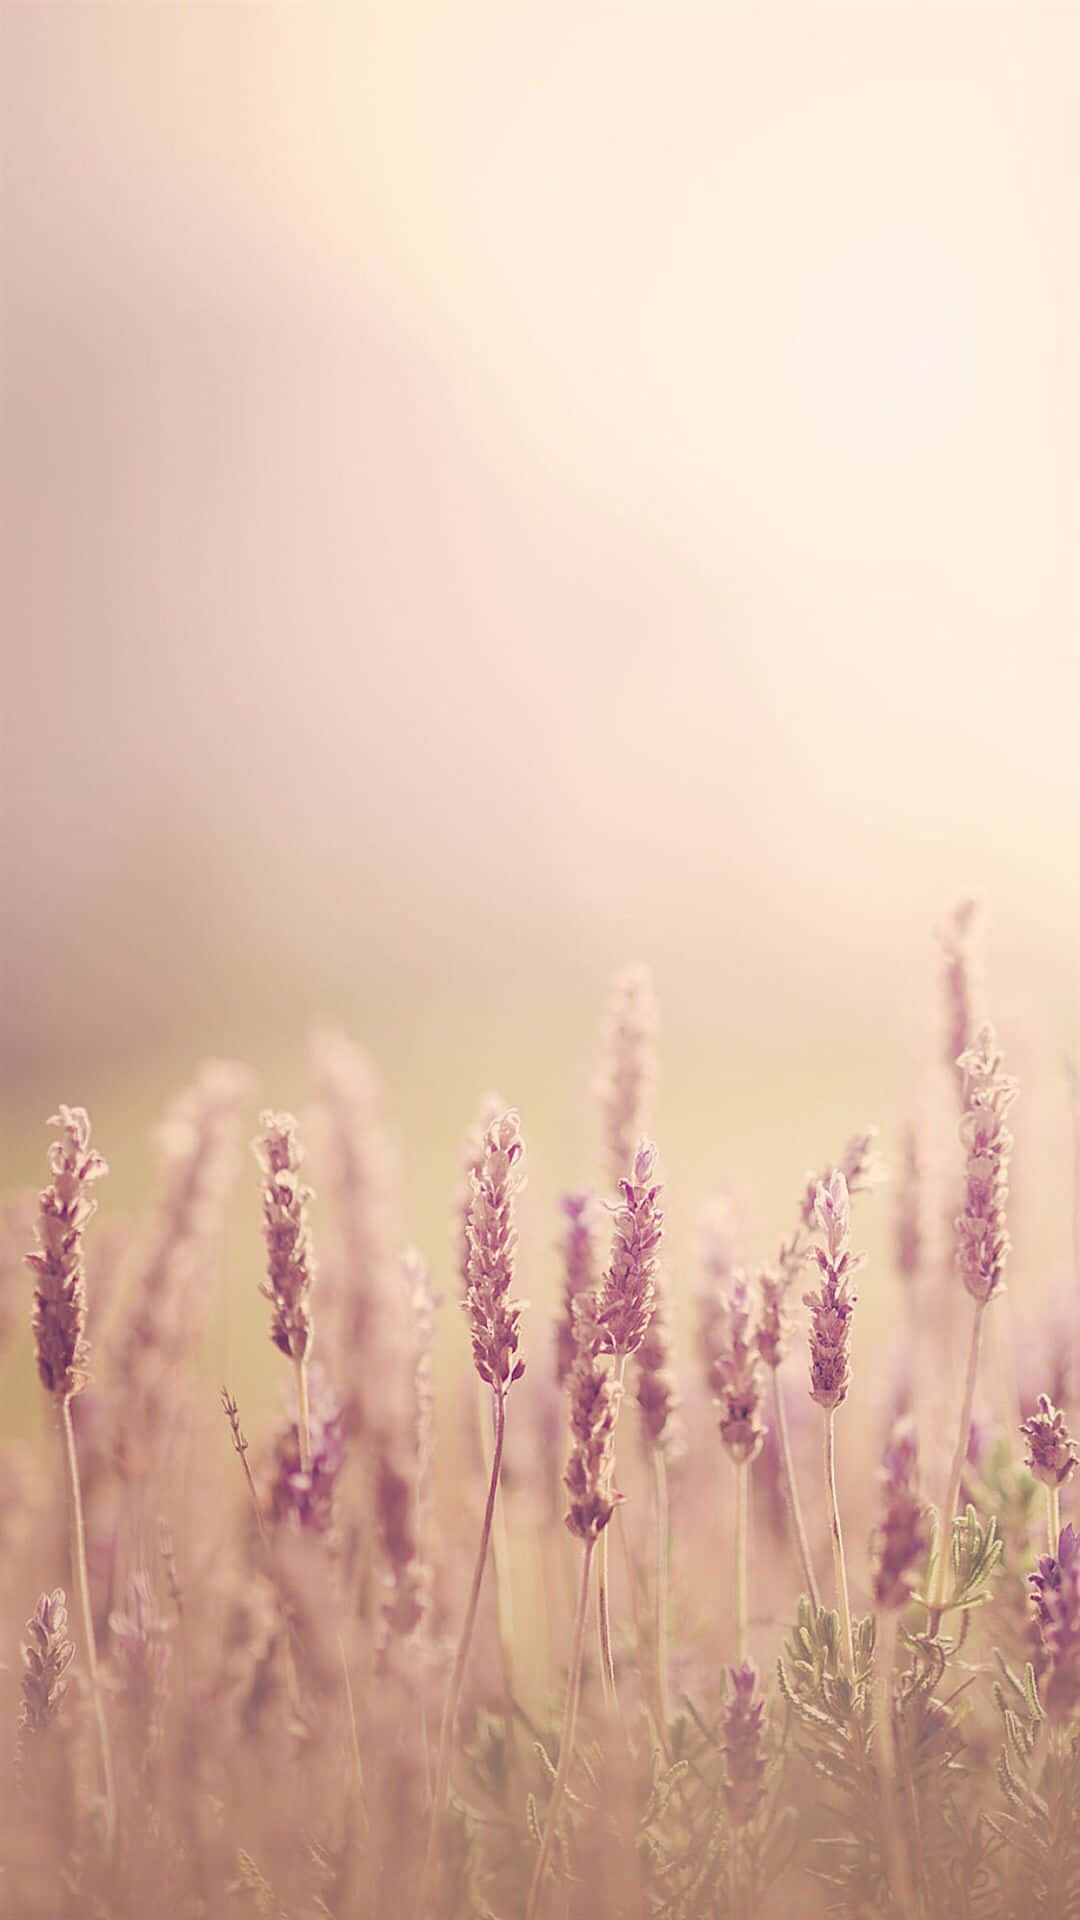 Lavender Field Sunrise Glow Wallpaper